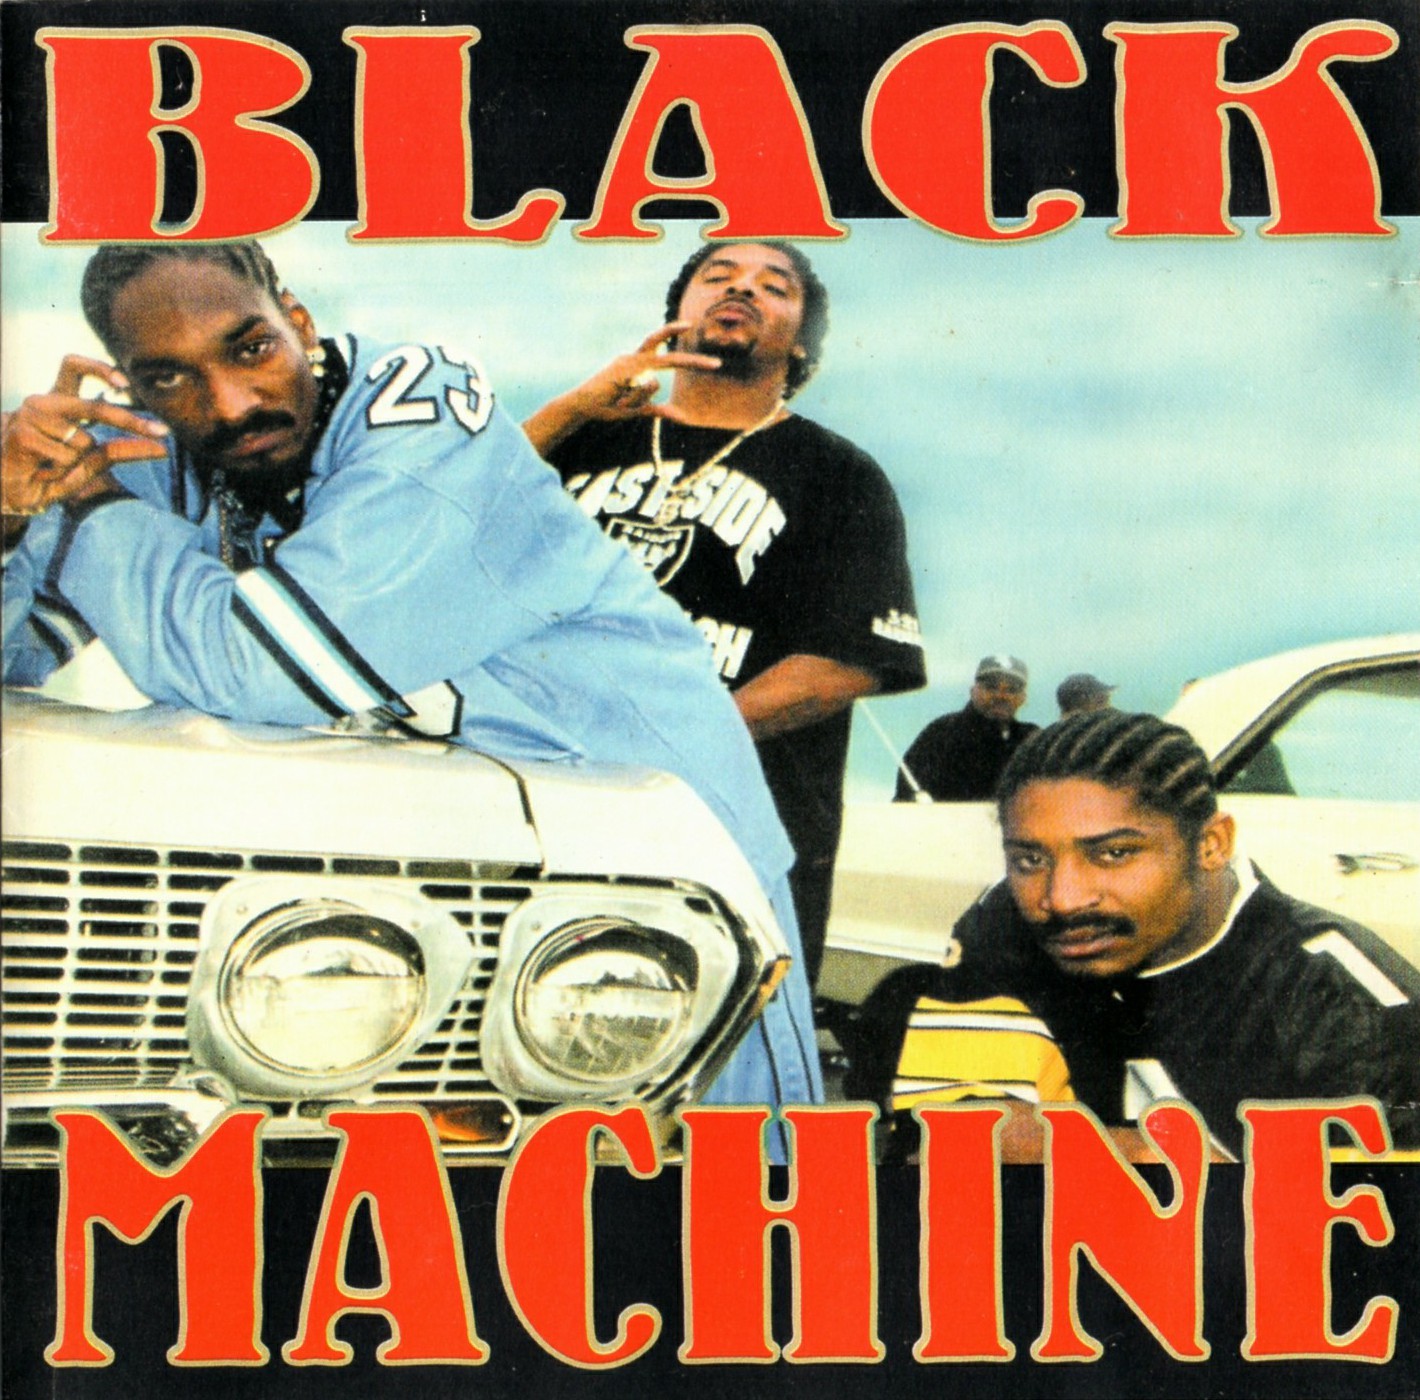 BLACK MACHINE